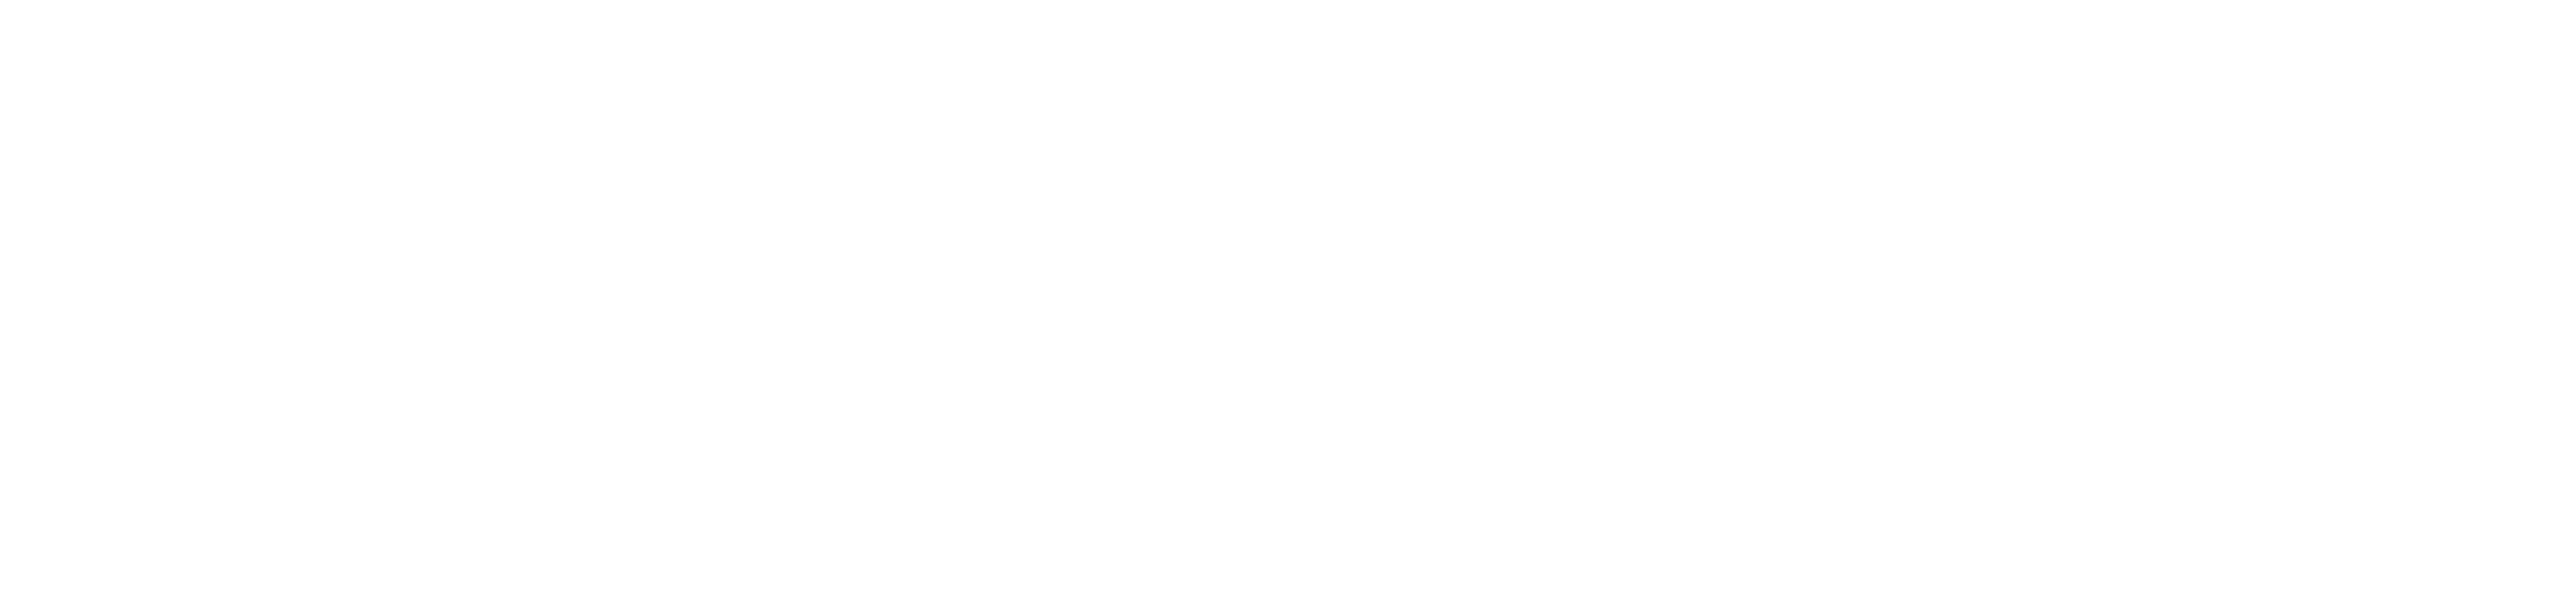 mygrants logo